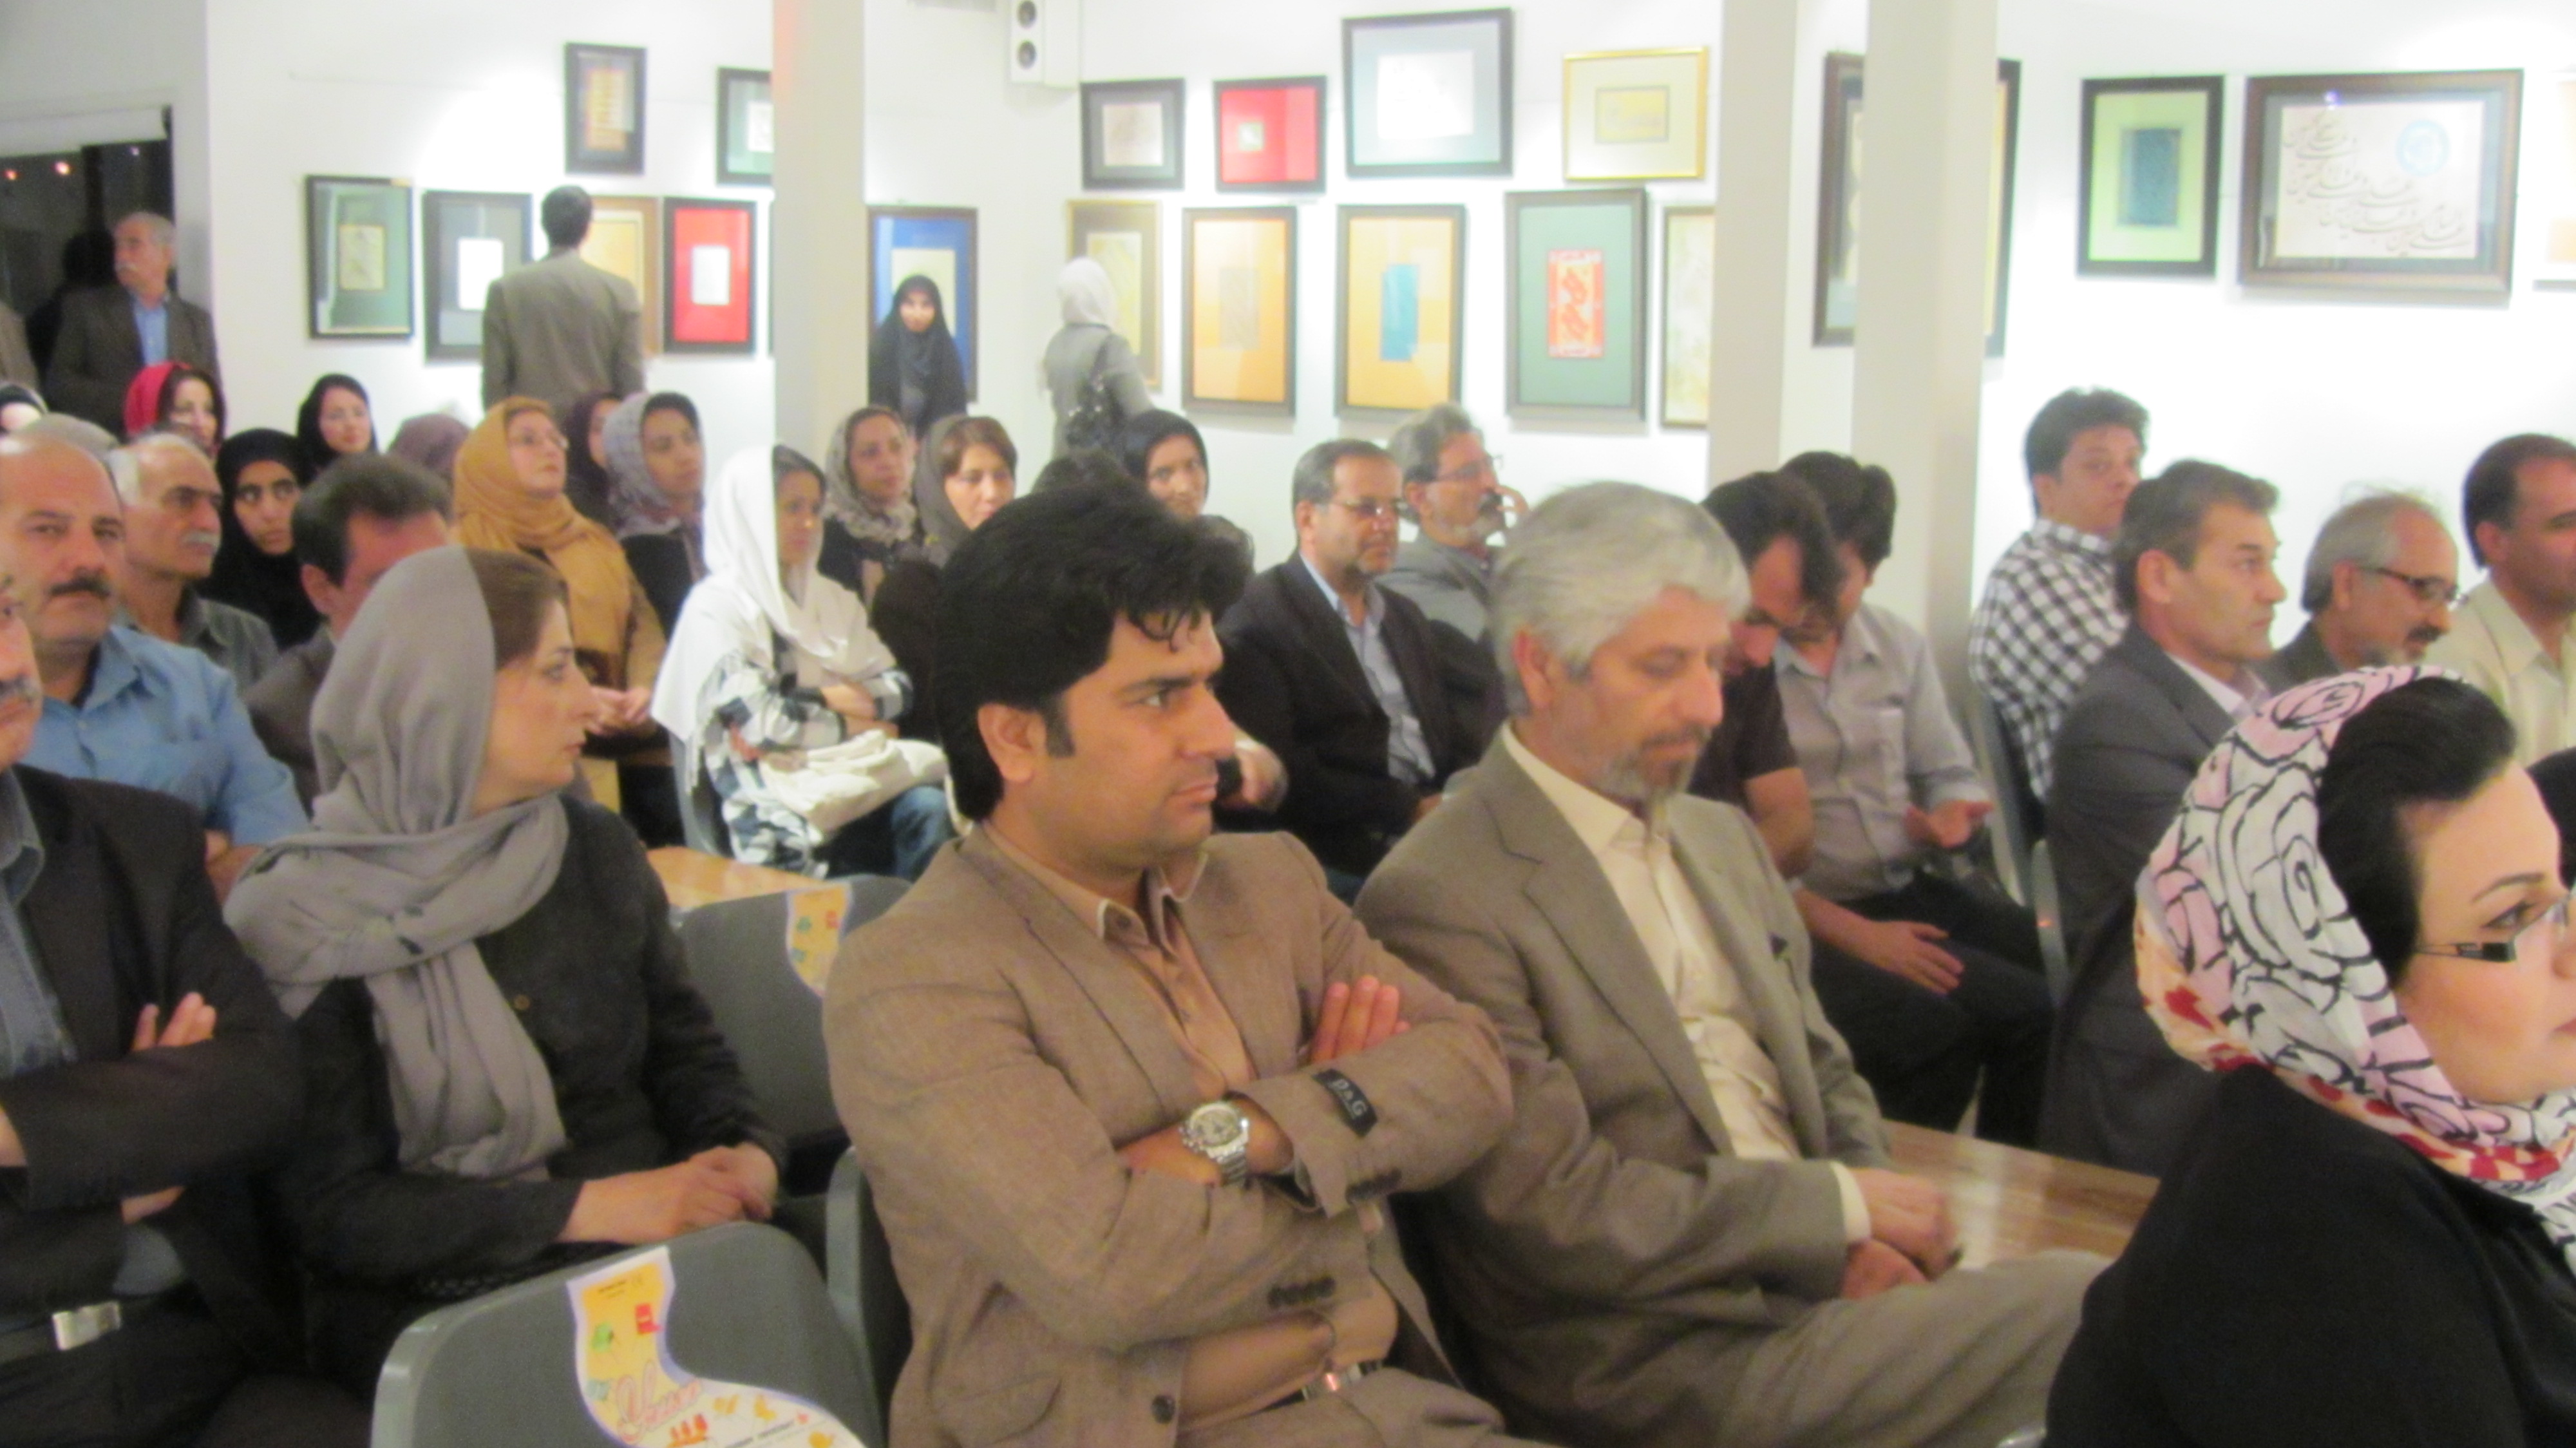 افتتاح نمایشگاه خوشنویسی جمعی از اساتید انجمن خوشنویسان در گالری وصال